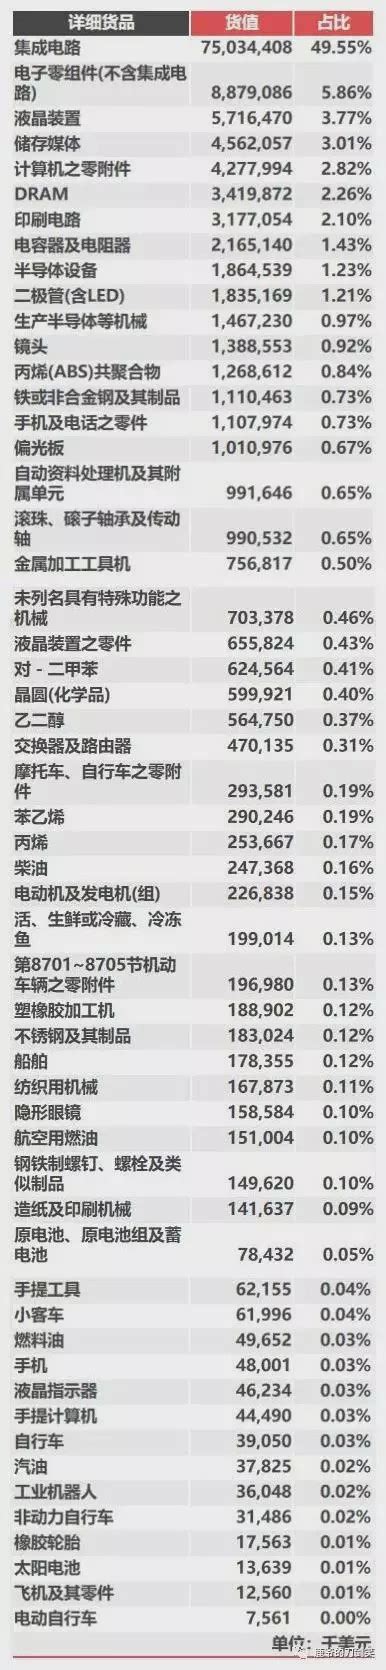 5月台湾对大陆出口增加三成，是对美国的三倍